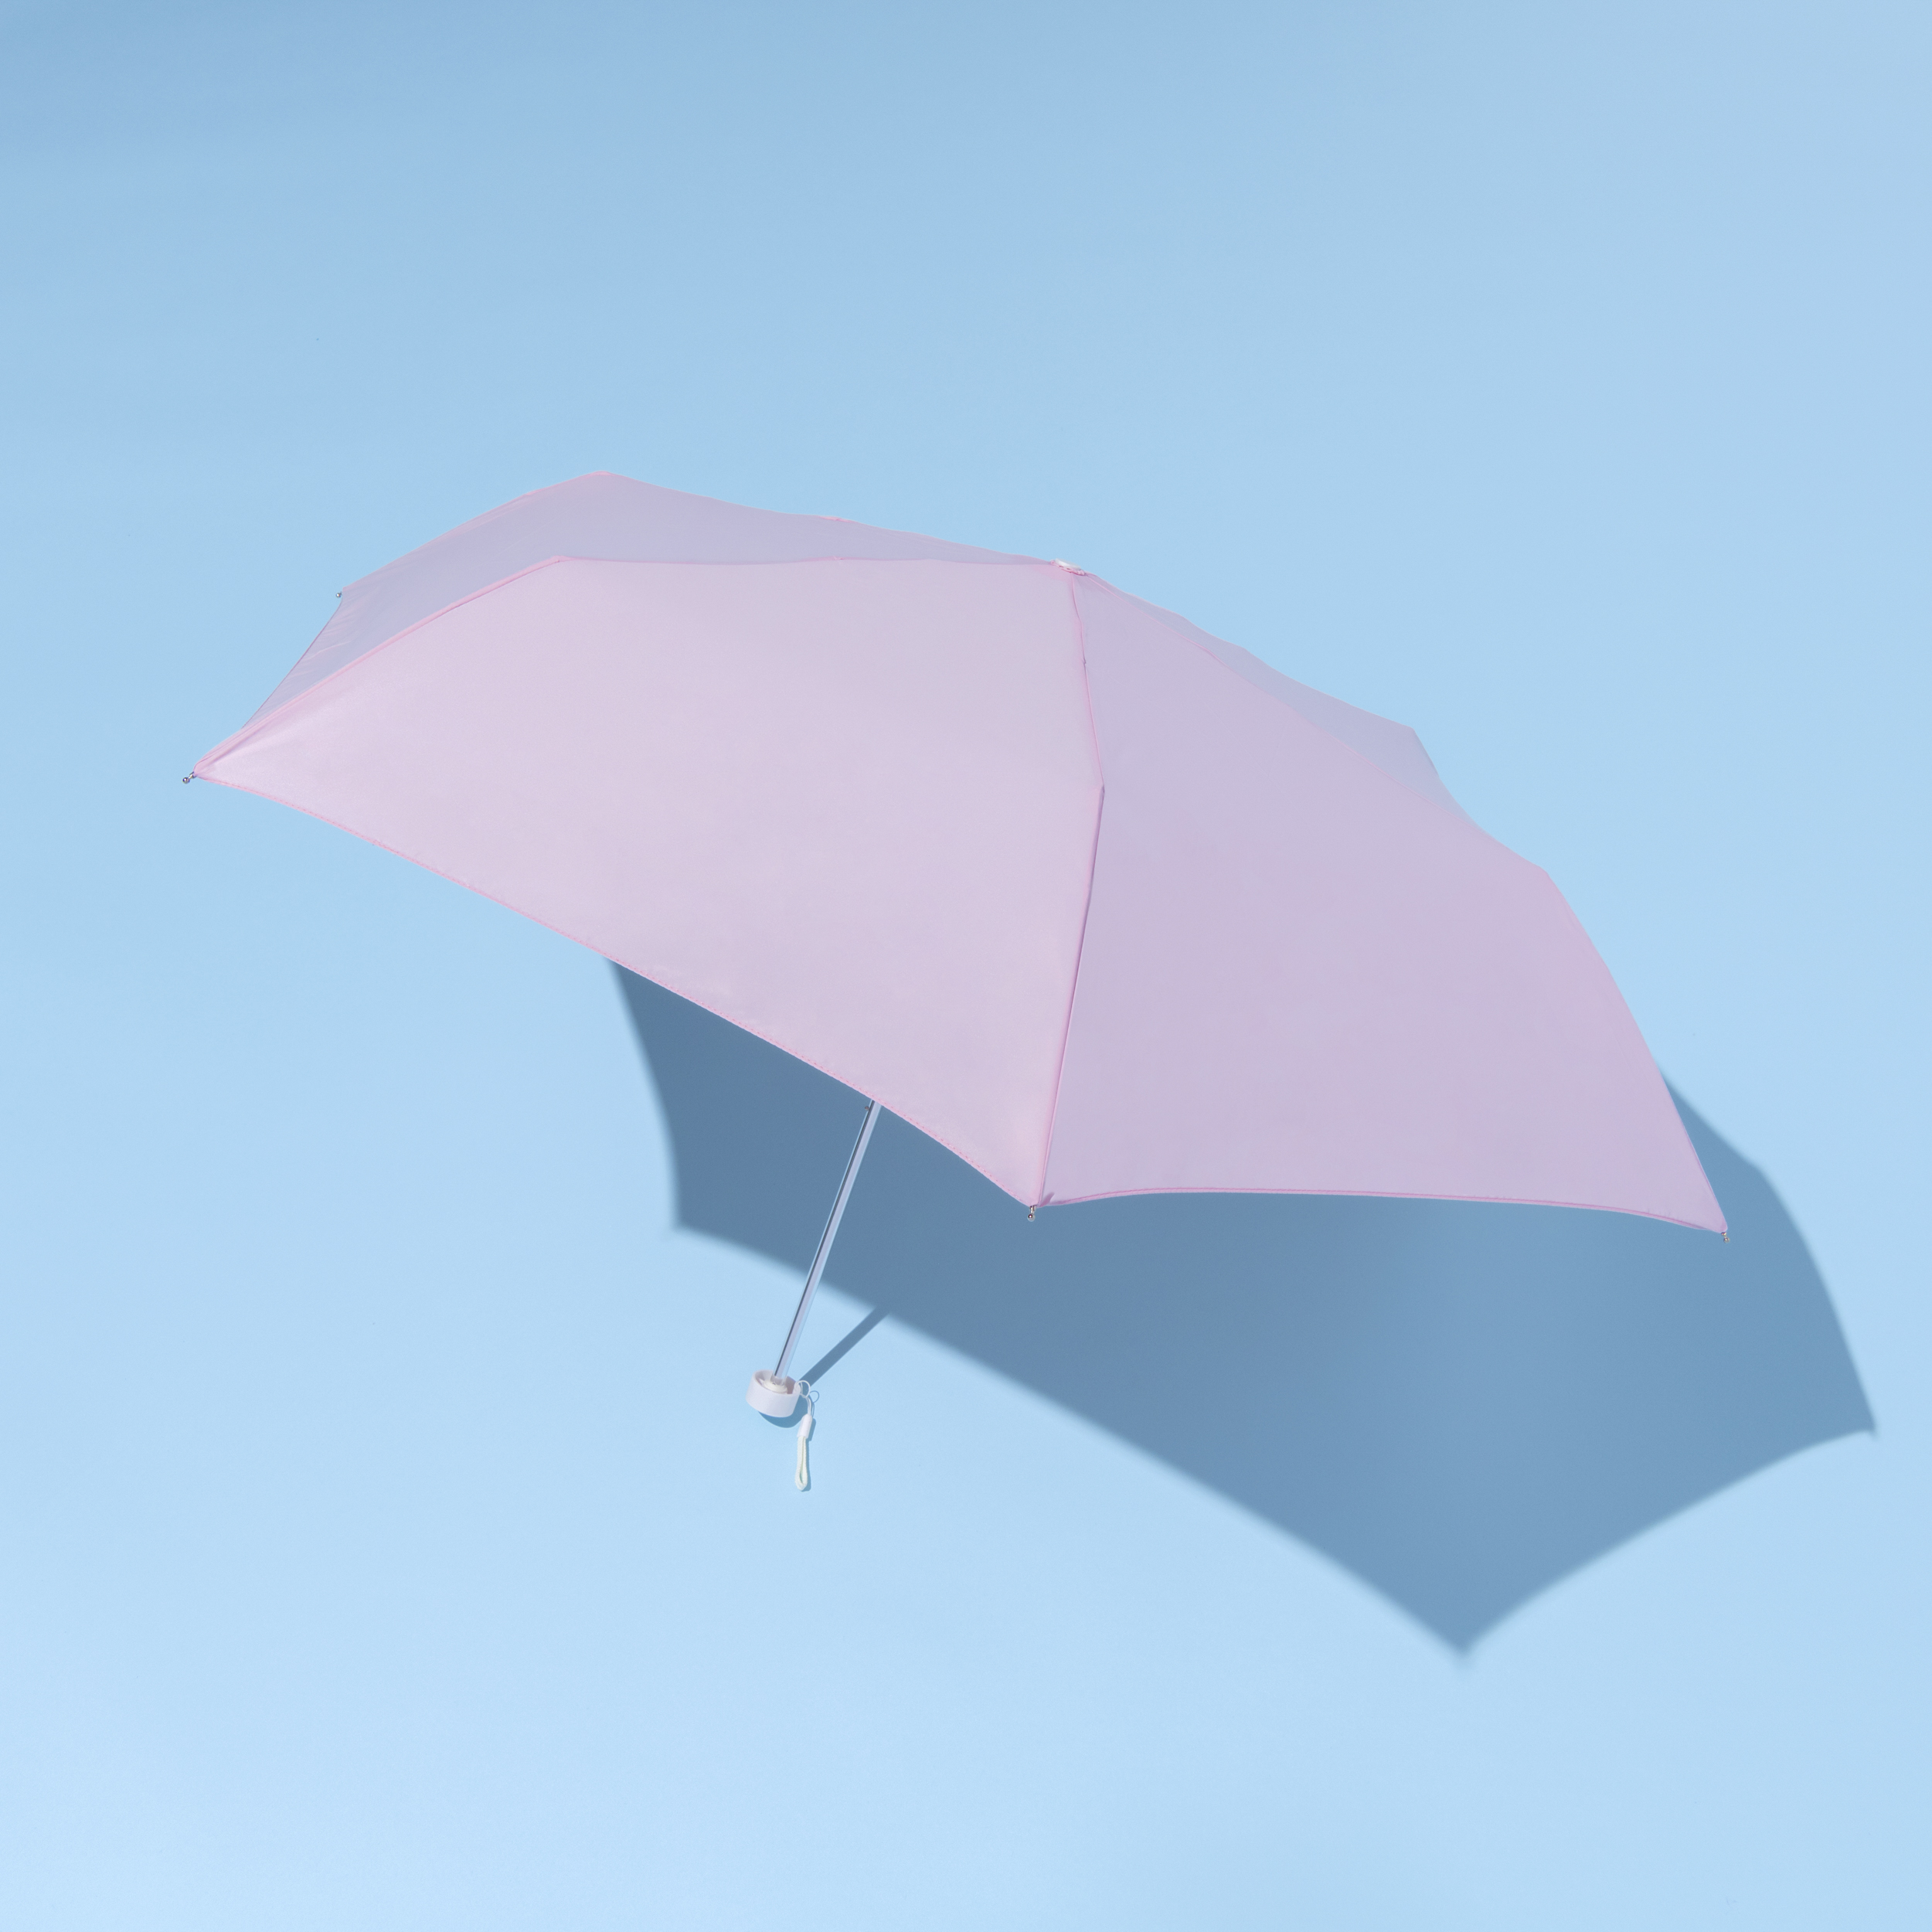 ニフティカラーズの日傘の撮りおろし画像